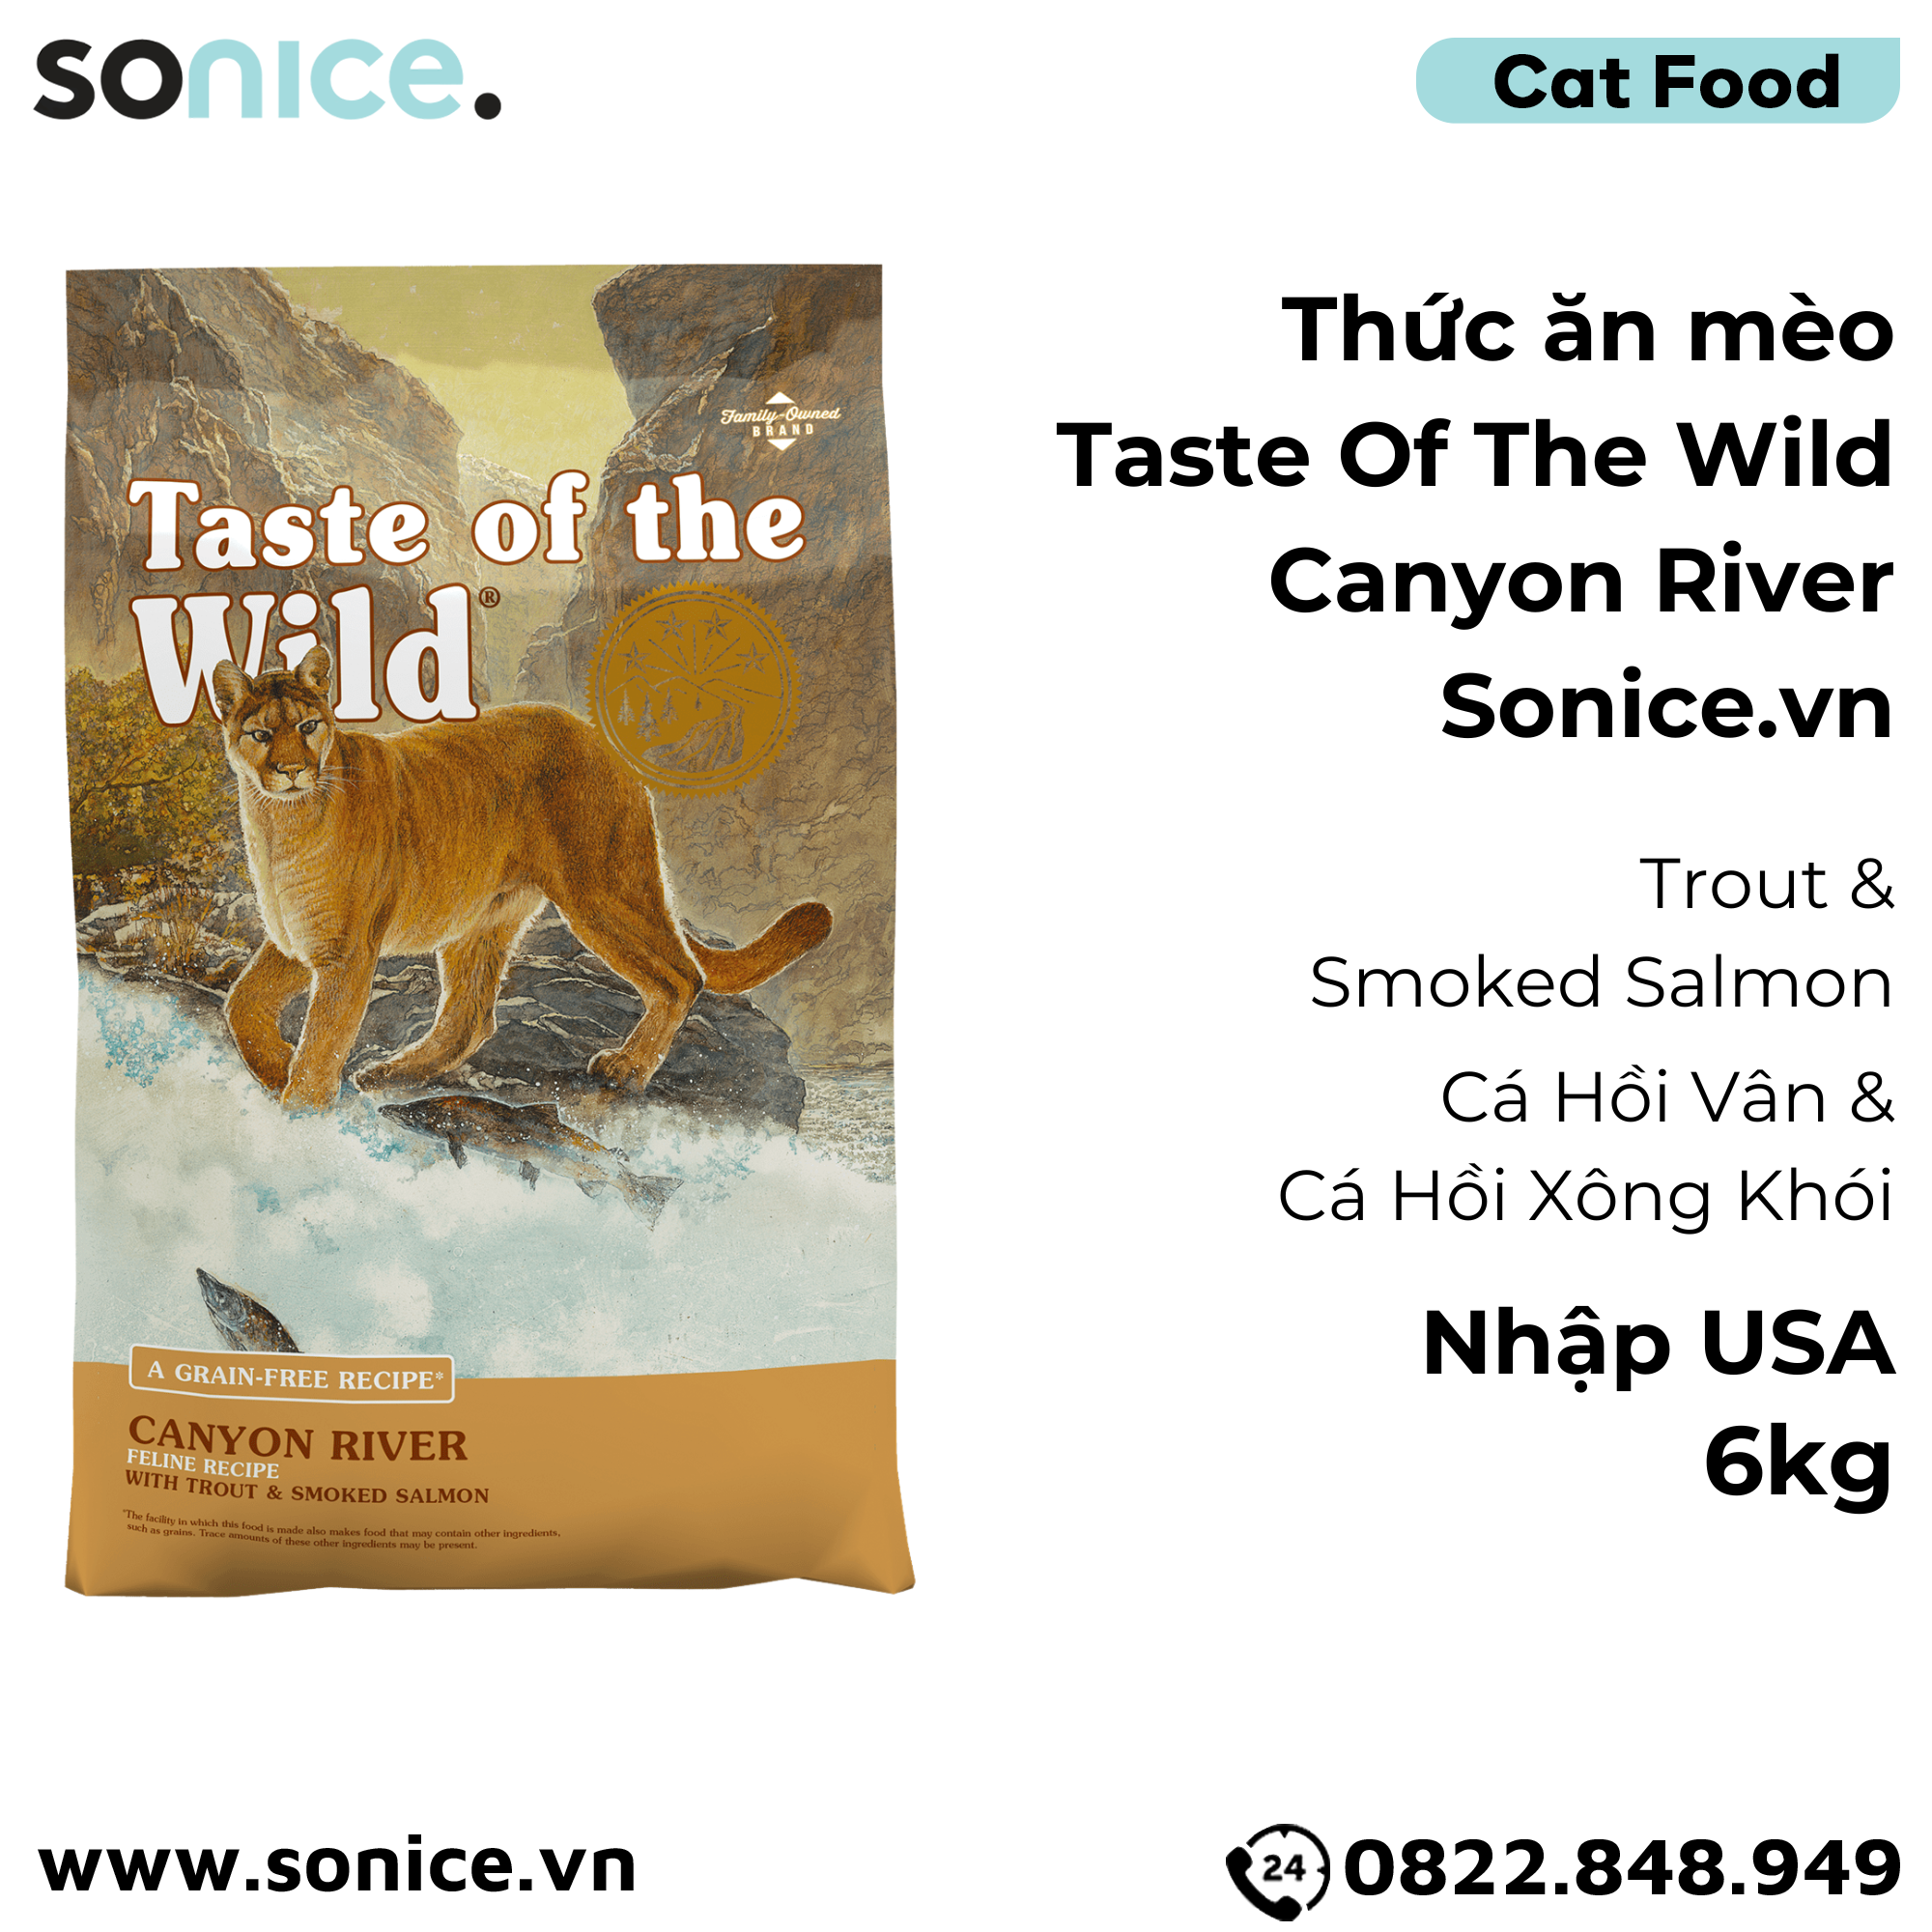  Thức ăn mèo Taste Of The Wild Canyon River 6kg - Trout & Smoked Salmon, Cá Hồi Vân & Cá Hồi Xông Khói - mèo mọi lứa tuổi, nhập USA SONICE. 